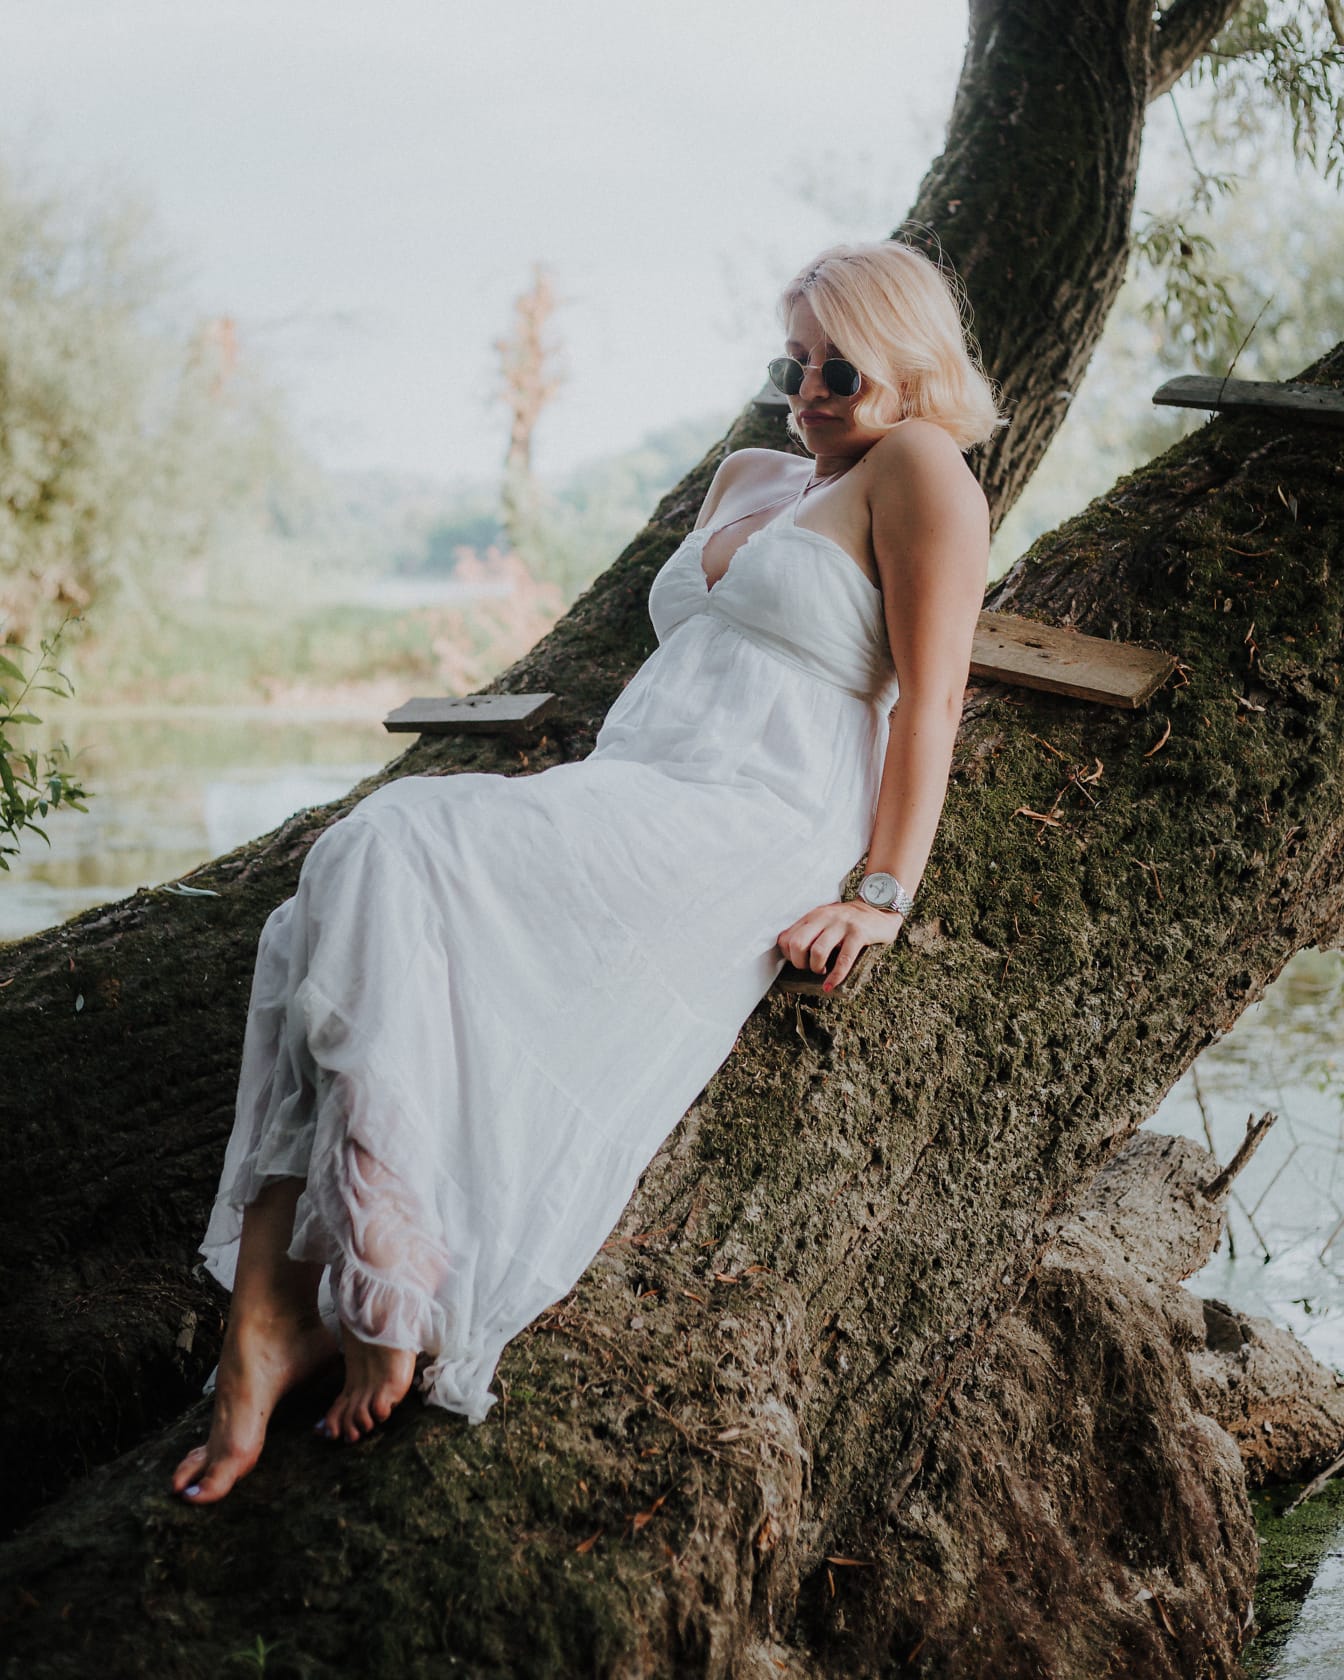 나무에 누워 있는 흰 드레스를 입은 화려한 맨발의 매혹적인 여자